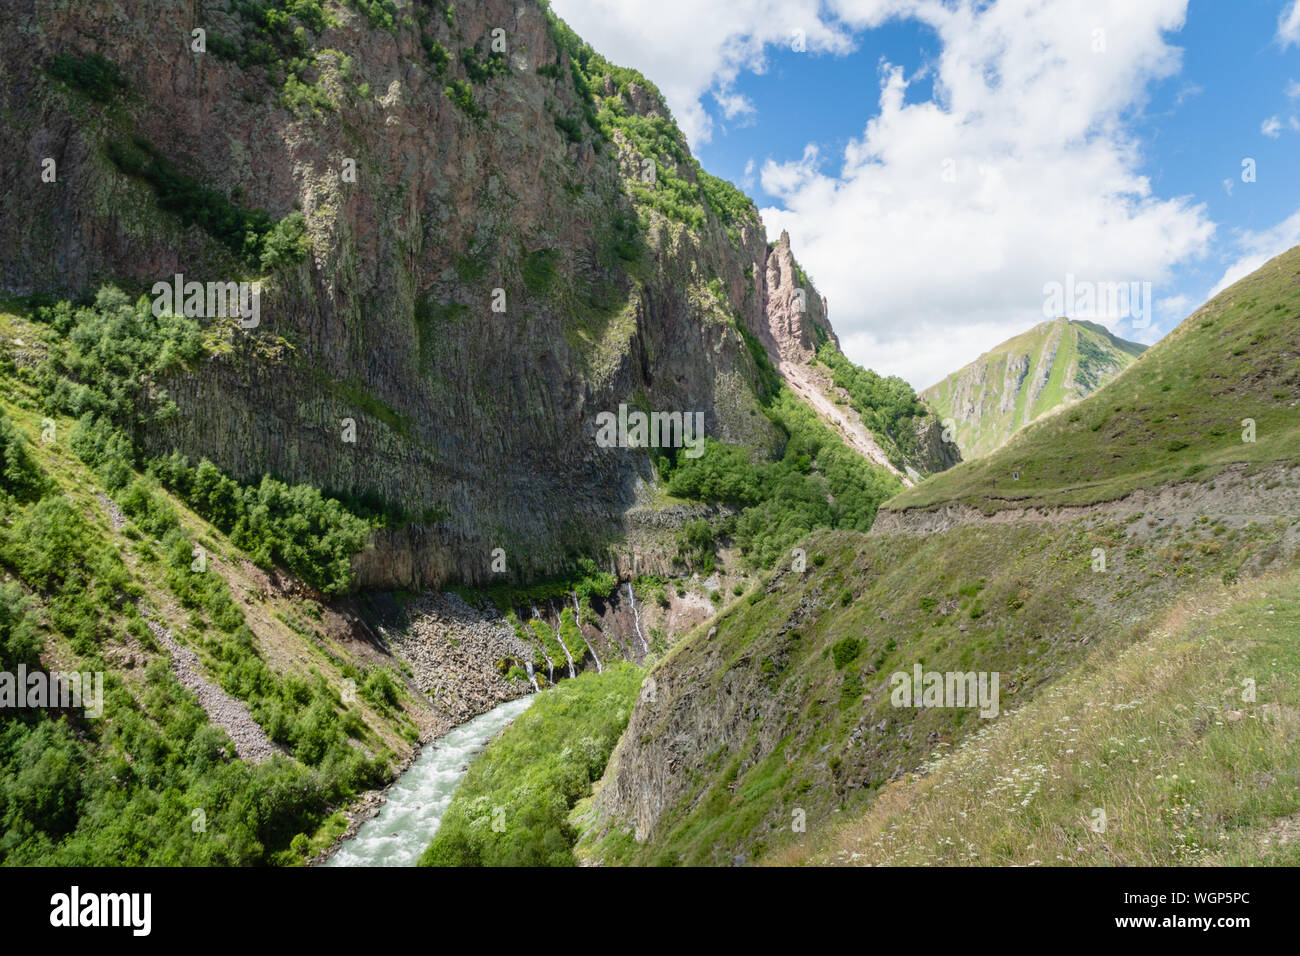 Truso Valley et de la Gorge de salon paysage sur le trekking / randonnée à pied, à Kazbegi, Géorgie. Truso Valley est une route de trekking panoramique Banque D'Images